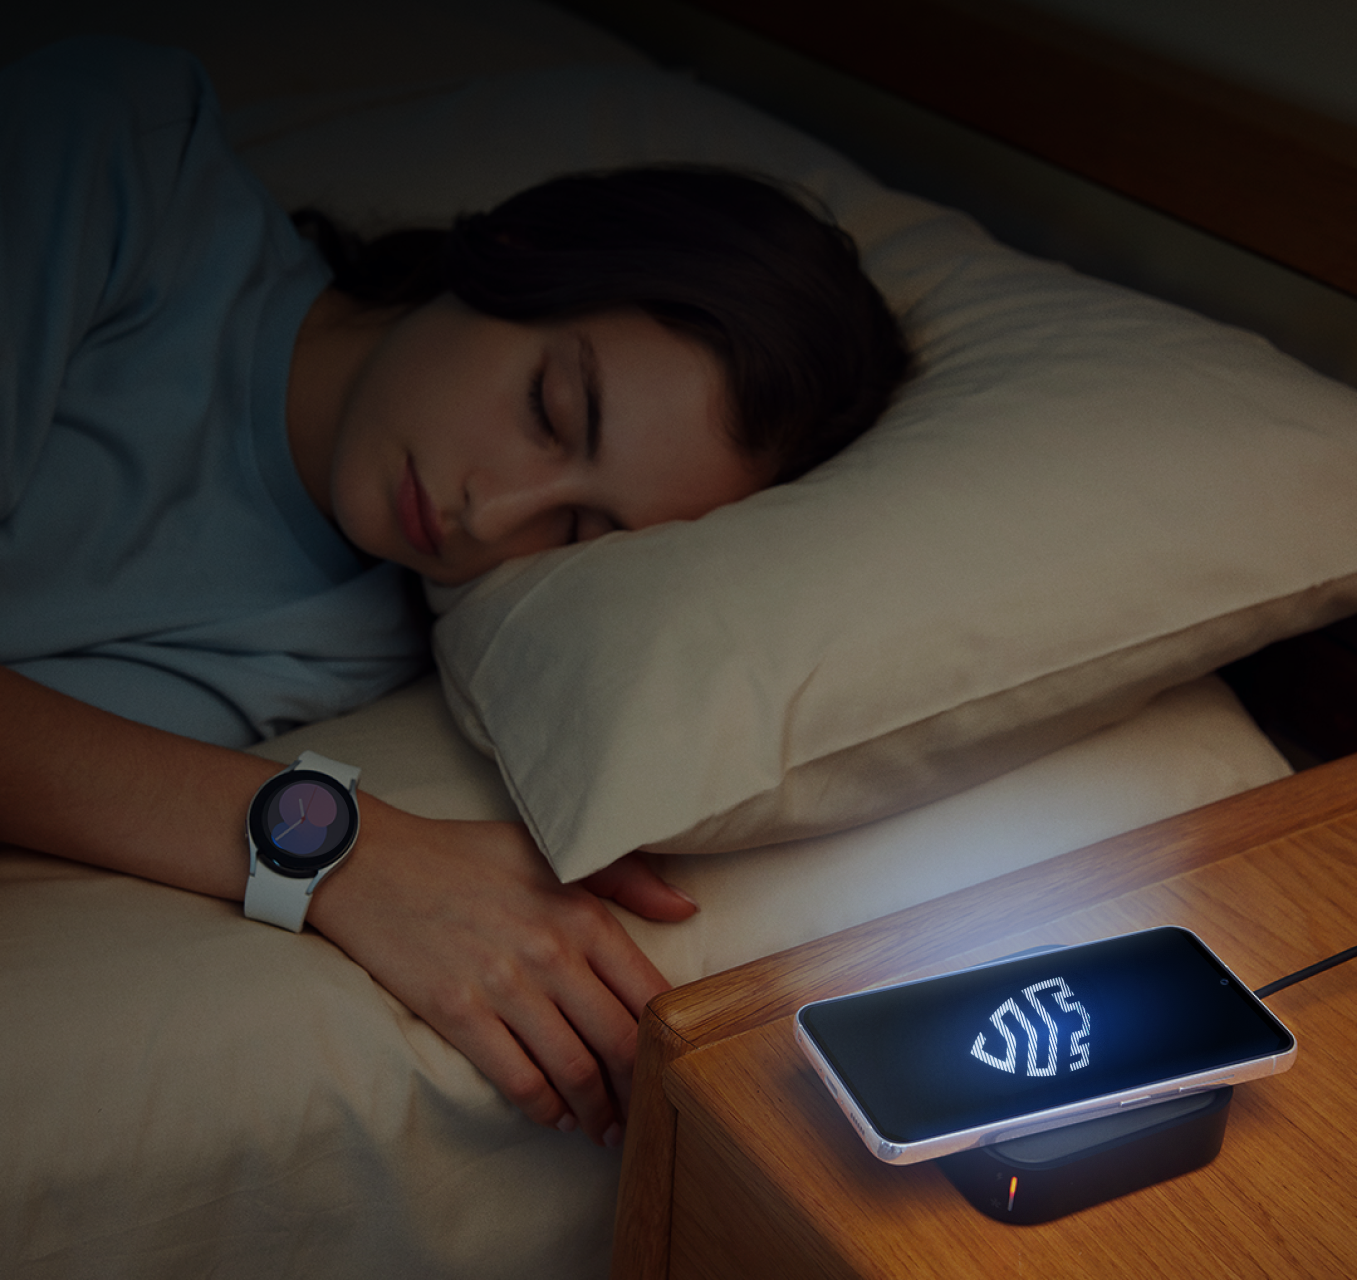 Pessoa dormindo no escuro ao lado de um dispositivo móvel Samsung exibindo um logotipo Knox iluminado.